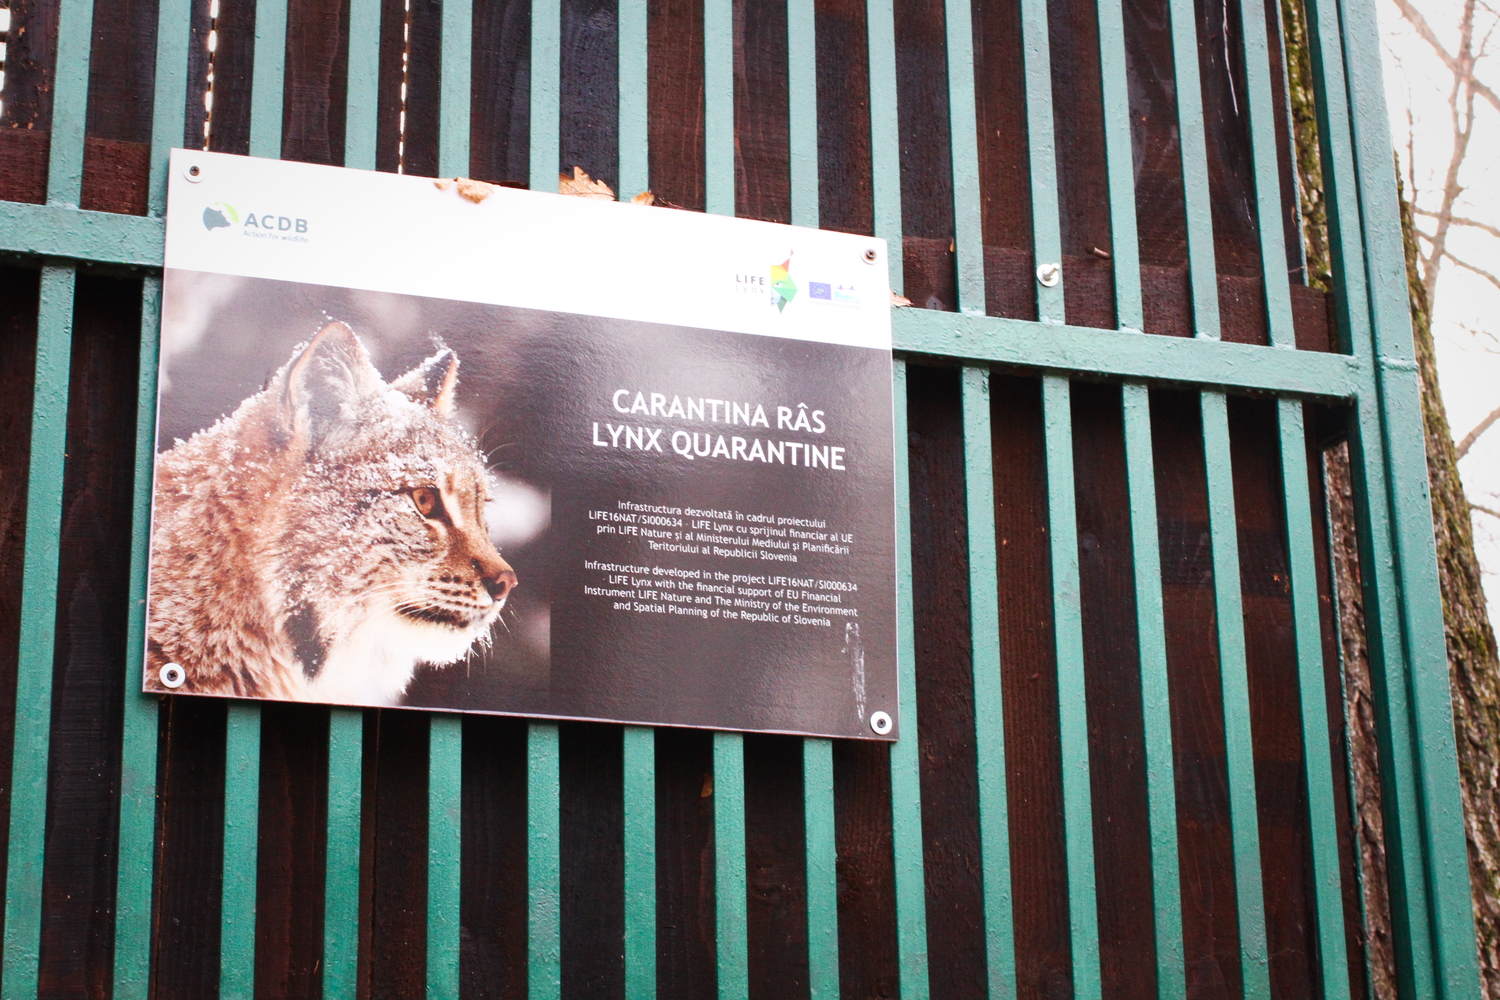 Cet affichage annonce les cages où les lynx passent en quarantaine avant d’être envoyés dans d’autres pays. Ces cages sont couvertes pour éviter que l’animal soit perturbé en voyant l’extérieur et des êtres humains. © Globe Reporters